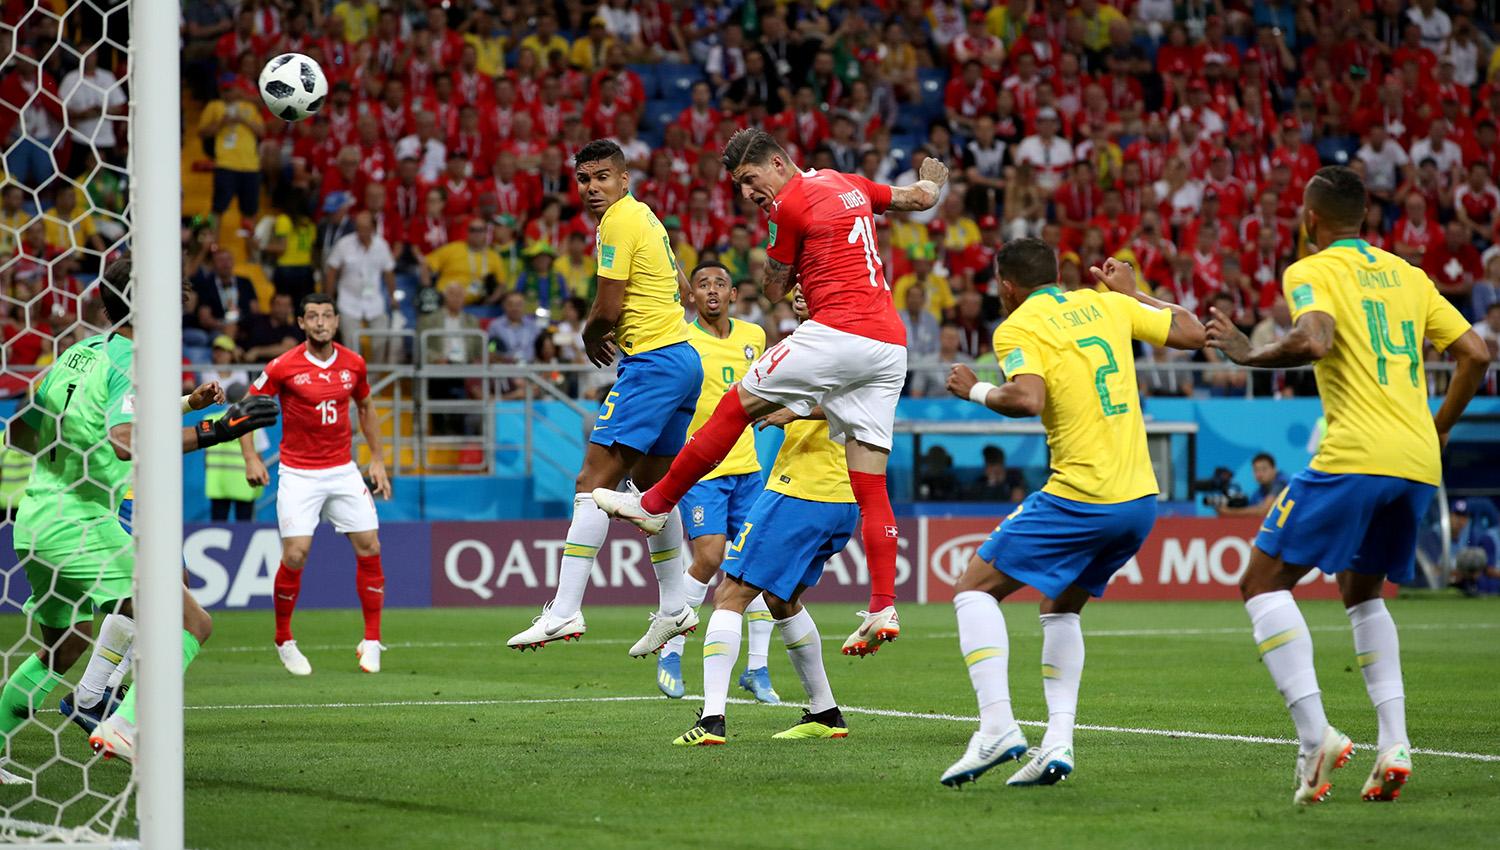 Los brasileños reclamaron la acción previa al gol conquistdo por Steven Zuber para Suiza.
REUTERS